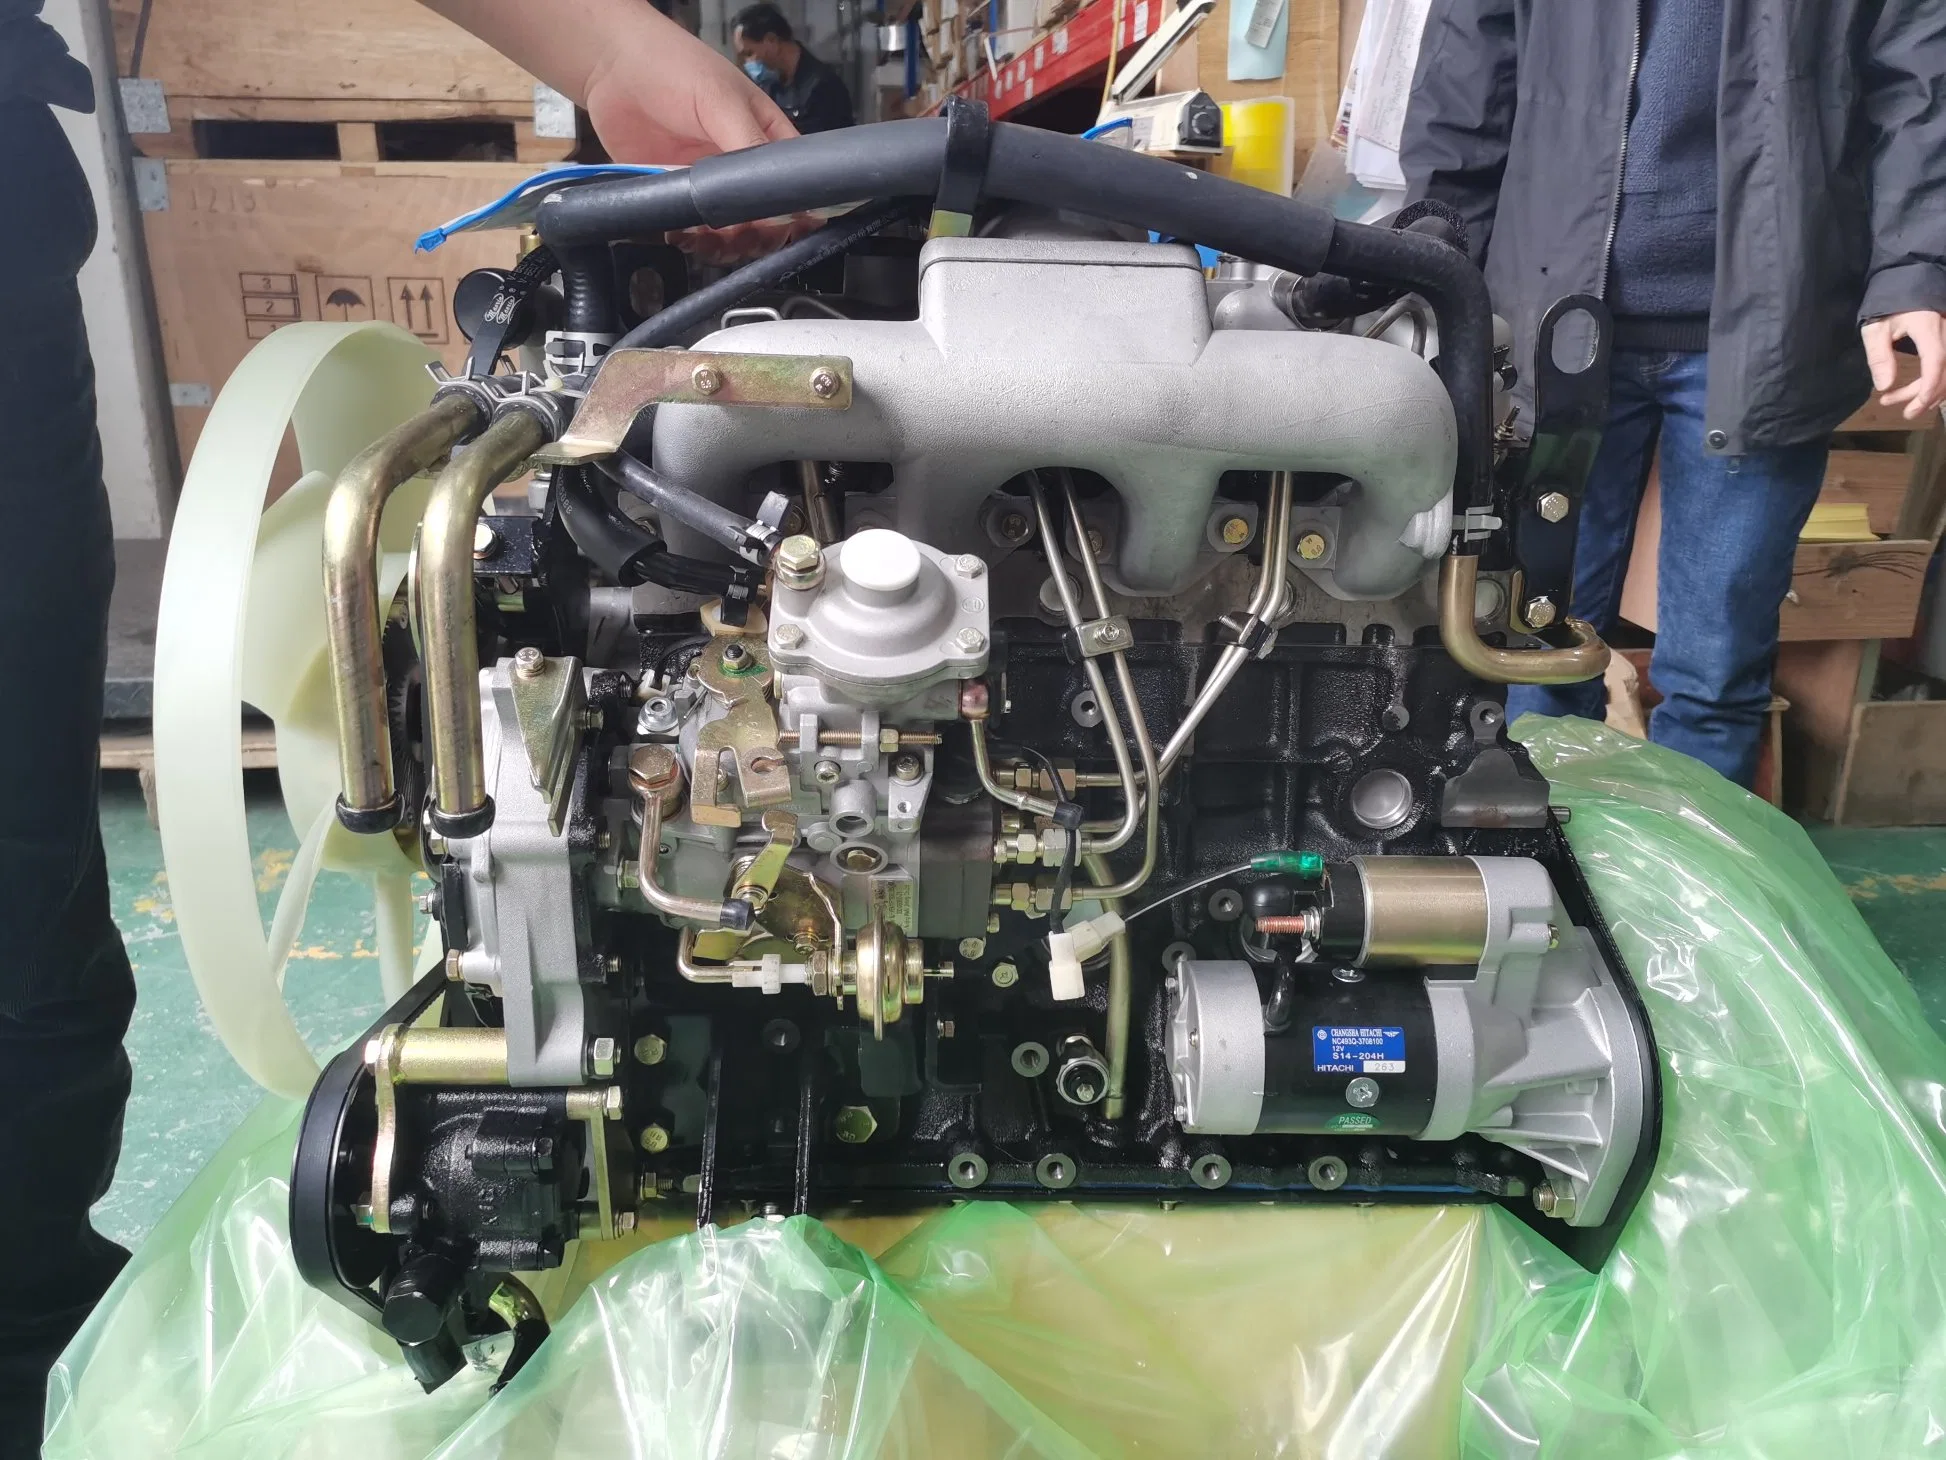 Diesel Engine/Truck Engine /Water Cooling Engine4 Cylinder 68kw 4jb1 /4jb1t for Truck SUV Mairne Diesel Engine Boat Motor Engine for Ship